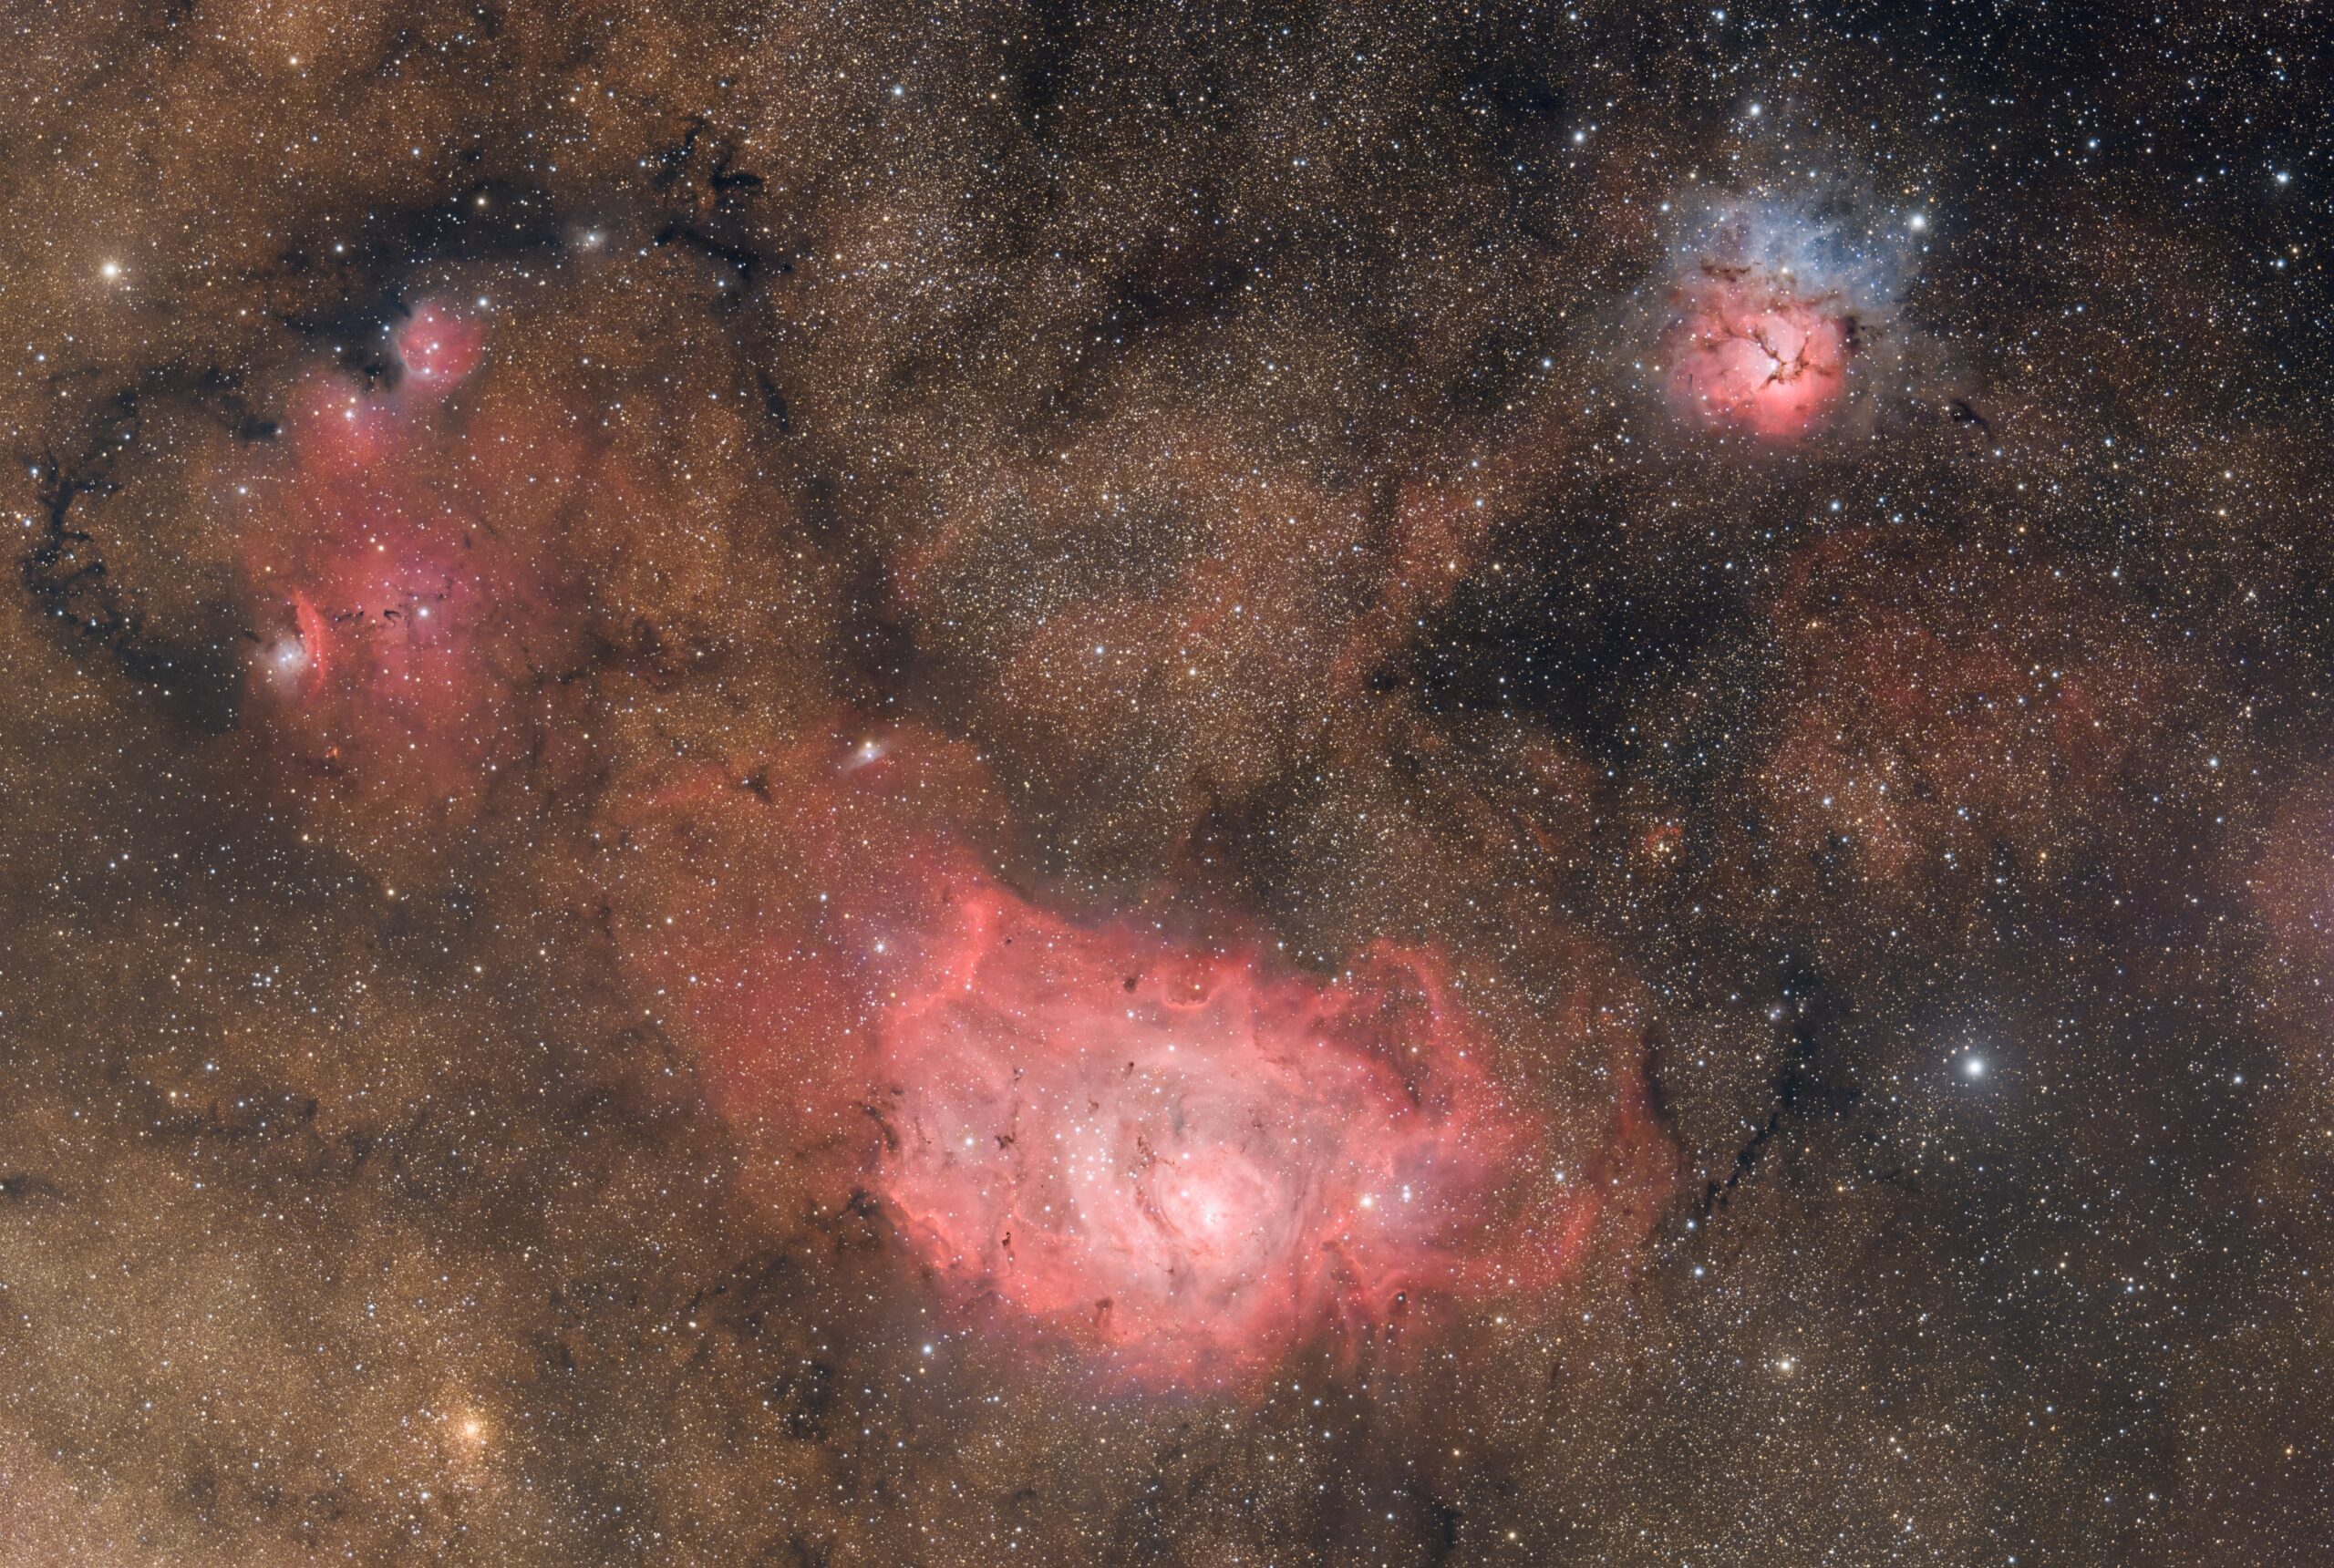 Lagoon and Trifid nebula region